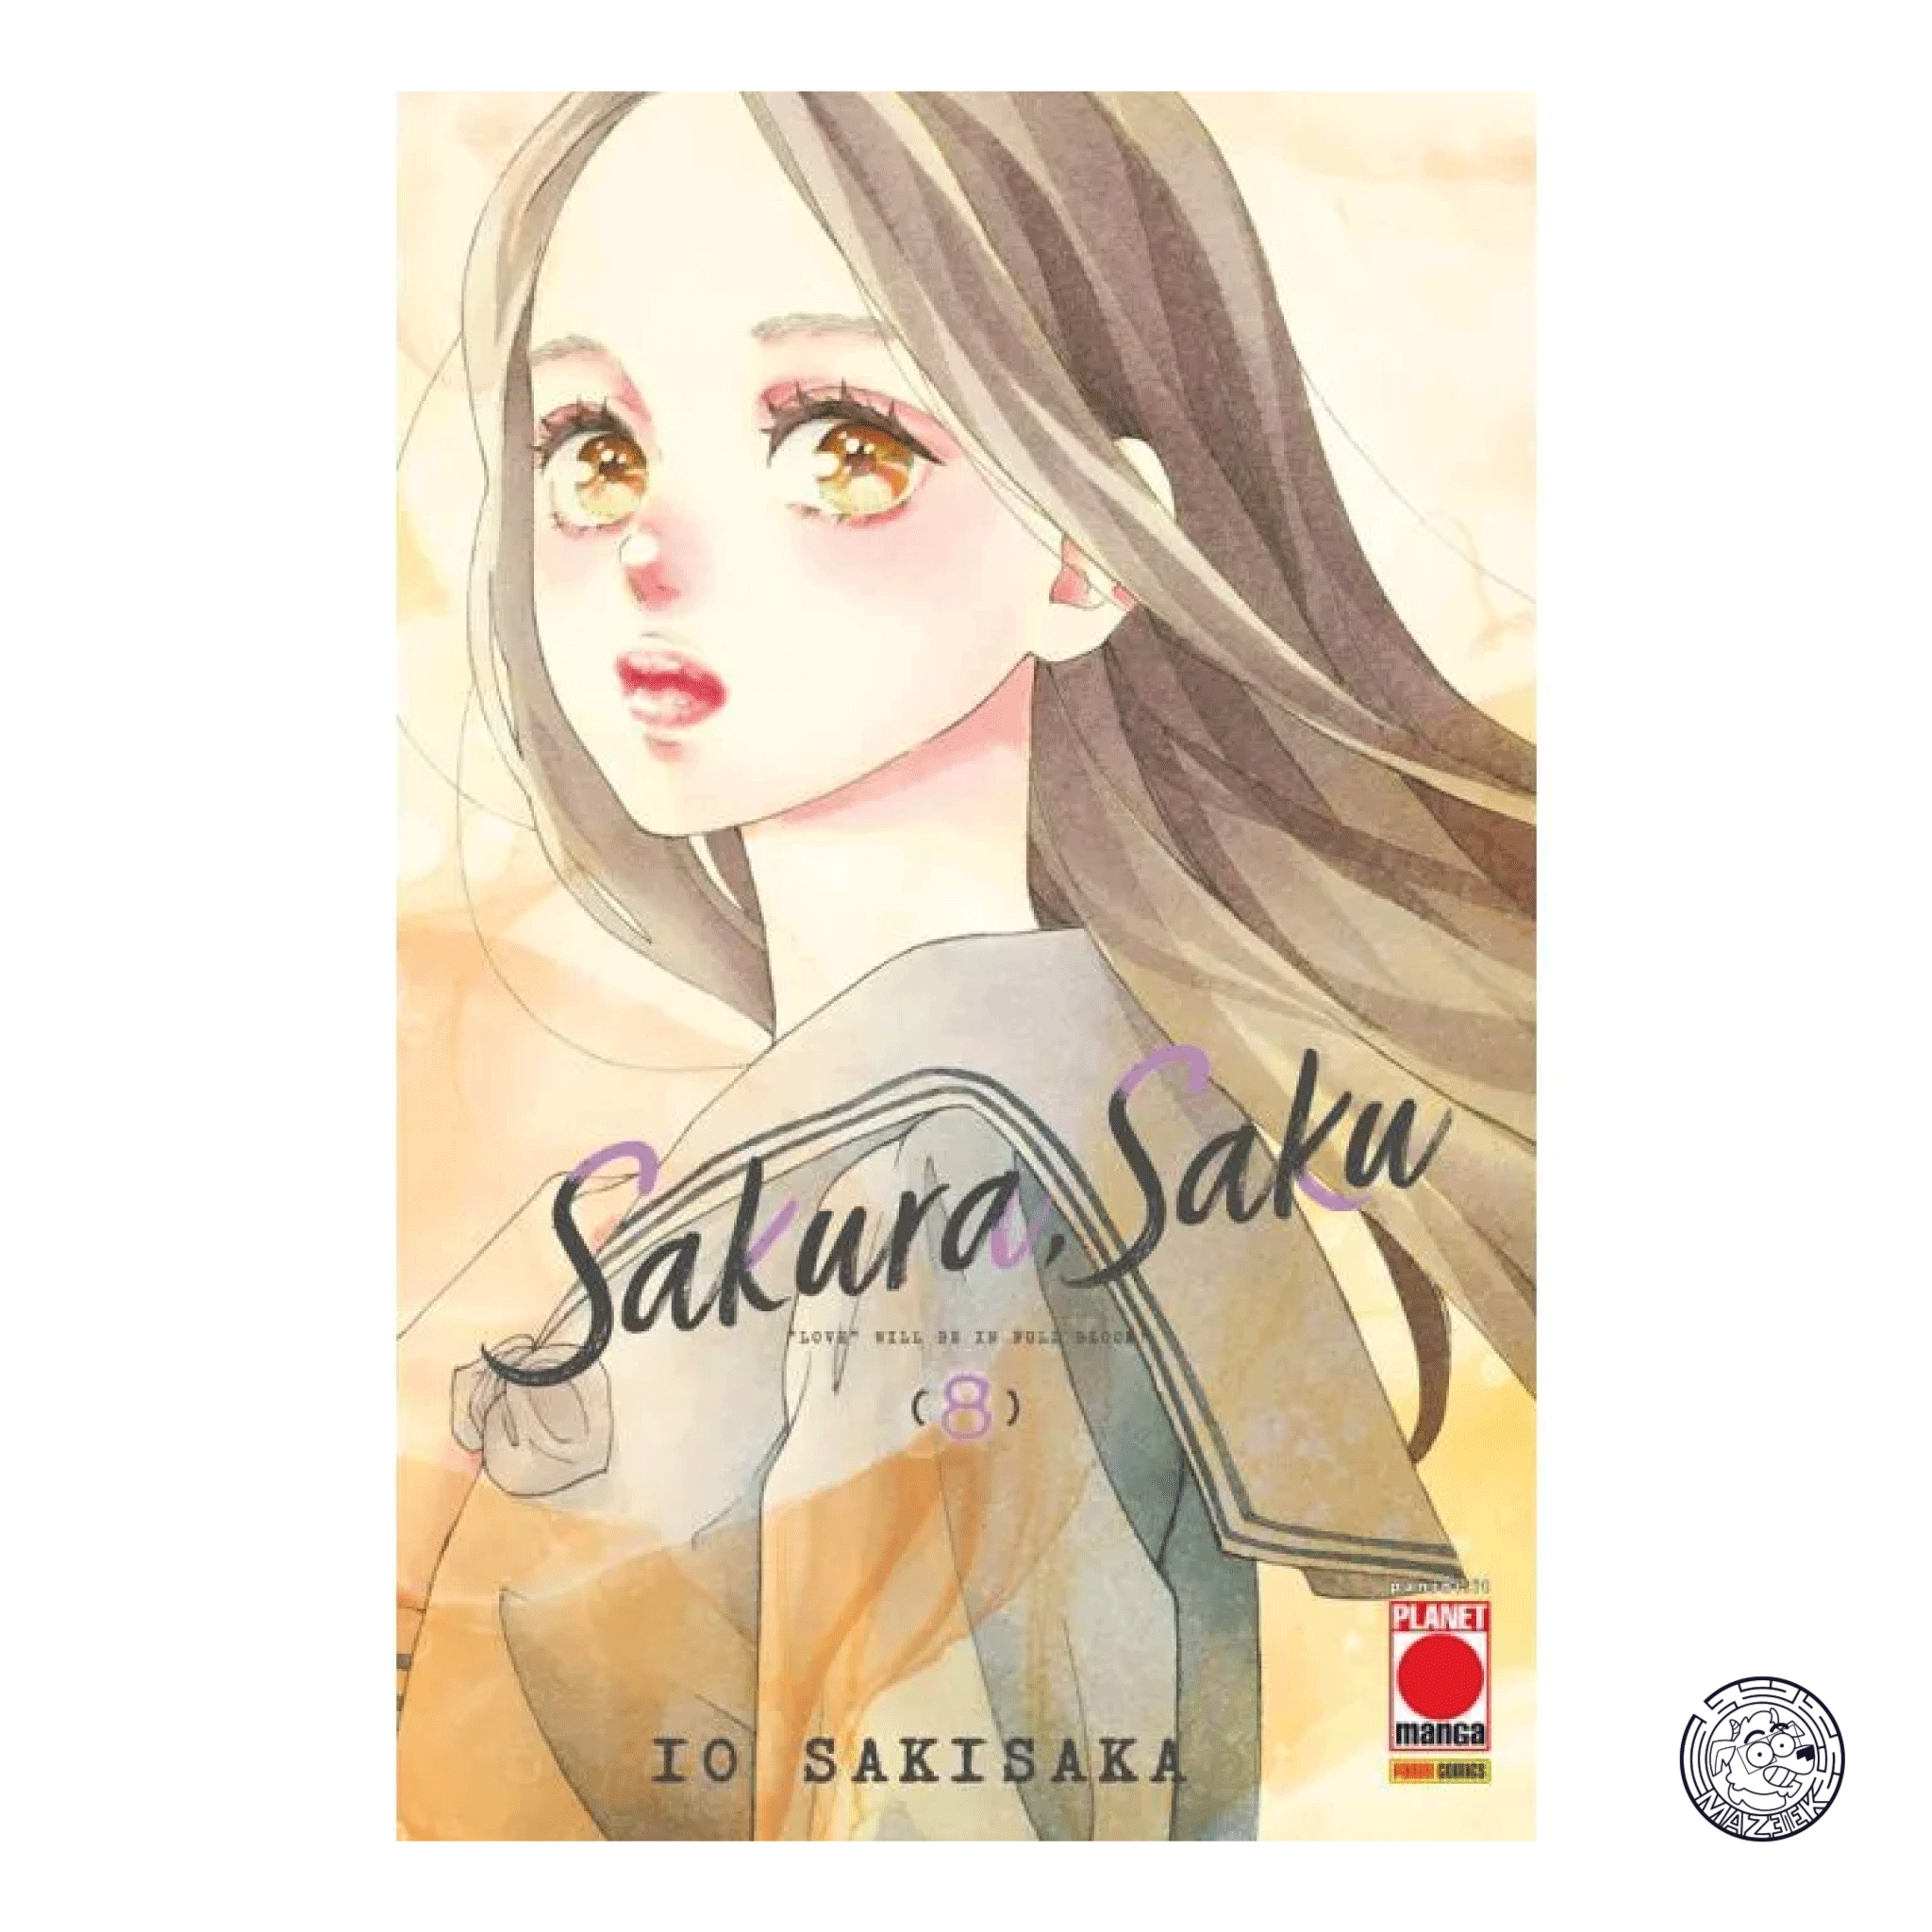 Sakura, Saku 08